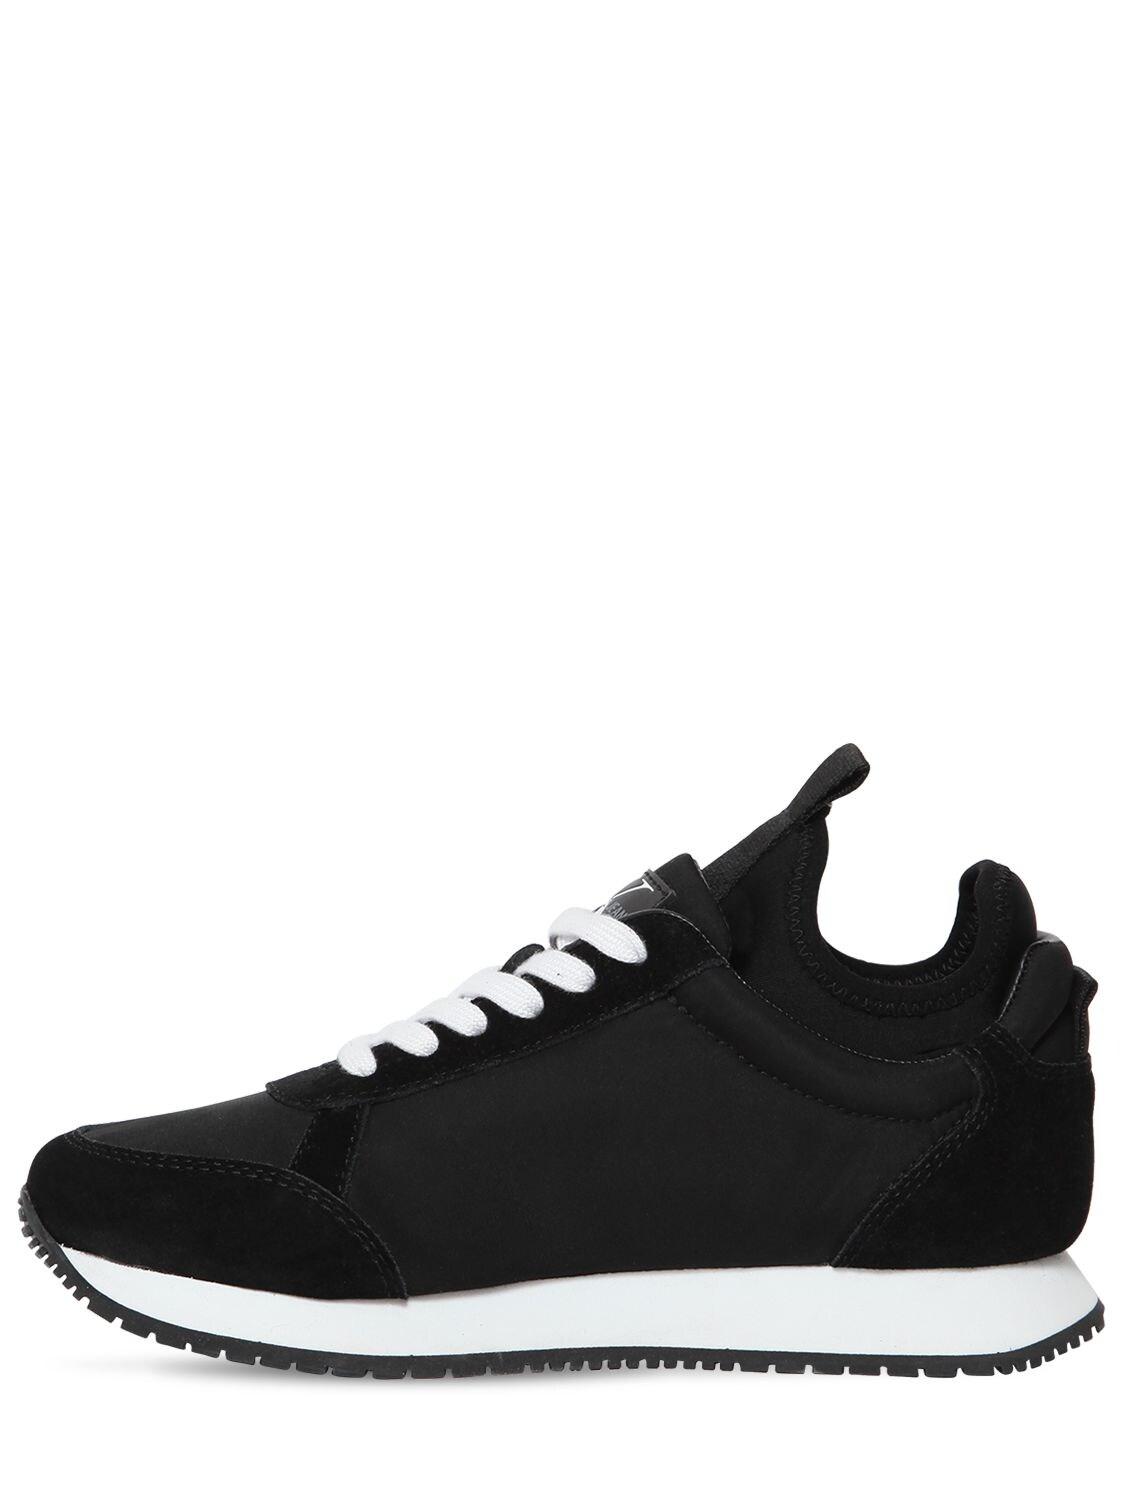 Calvin Klein 20mm Josslyn Nylon Sneakers in Black | Lyst